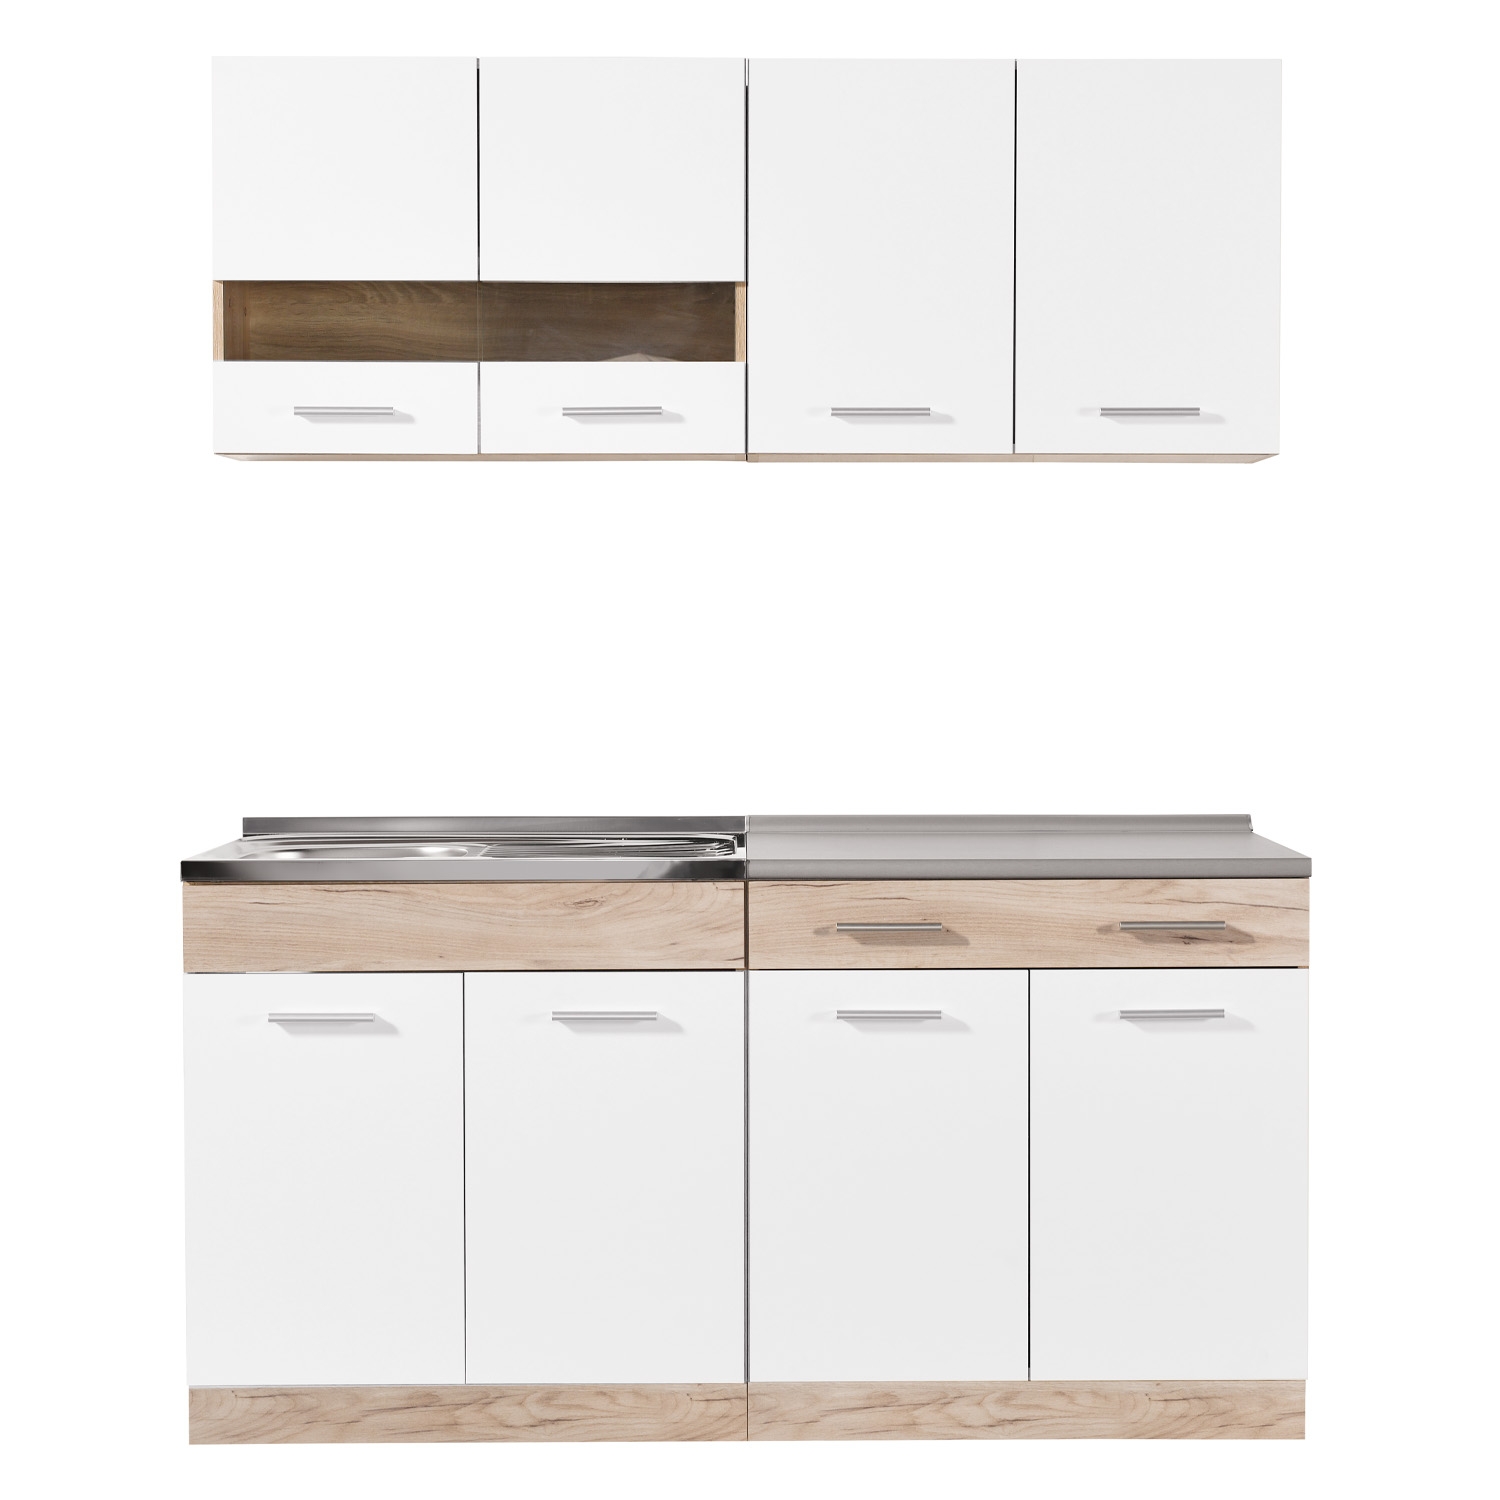 Moderne Küche Weiß Küchenzeile ohne Geräte Einbauküche Singleküche Küchenschränke 160 cm Eiche Grau